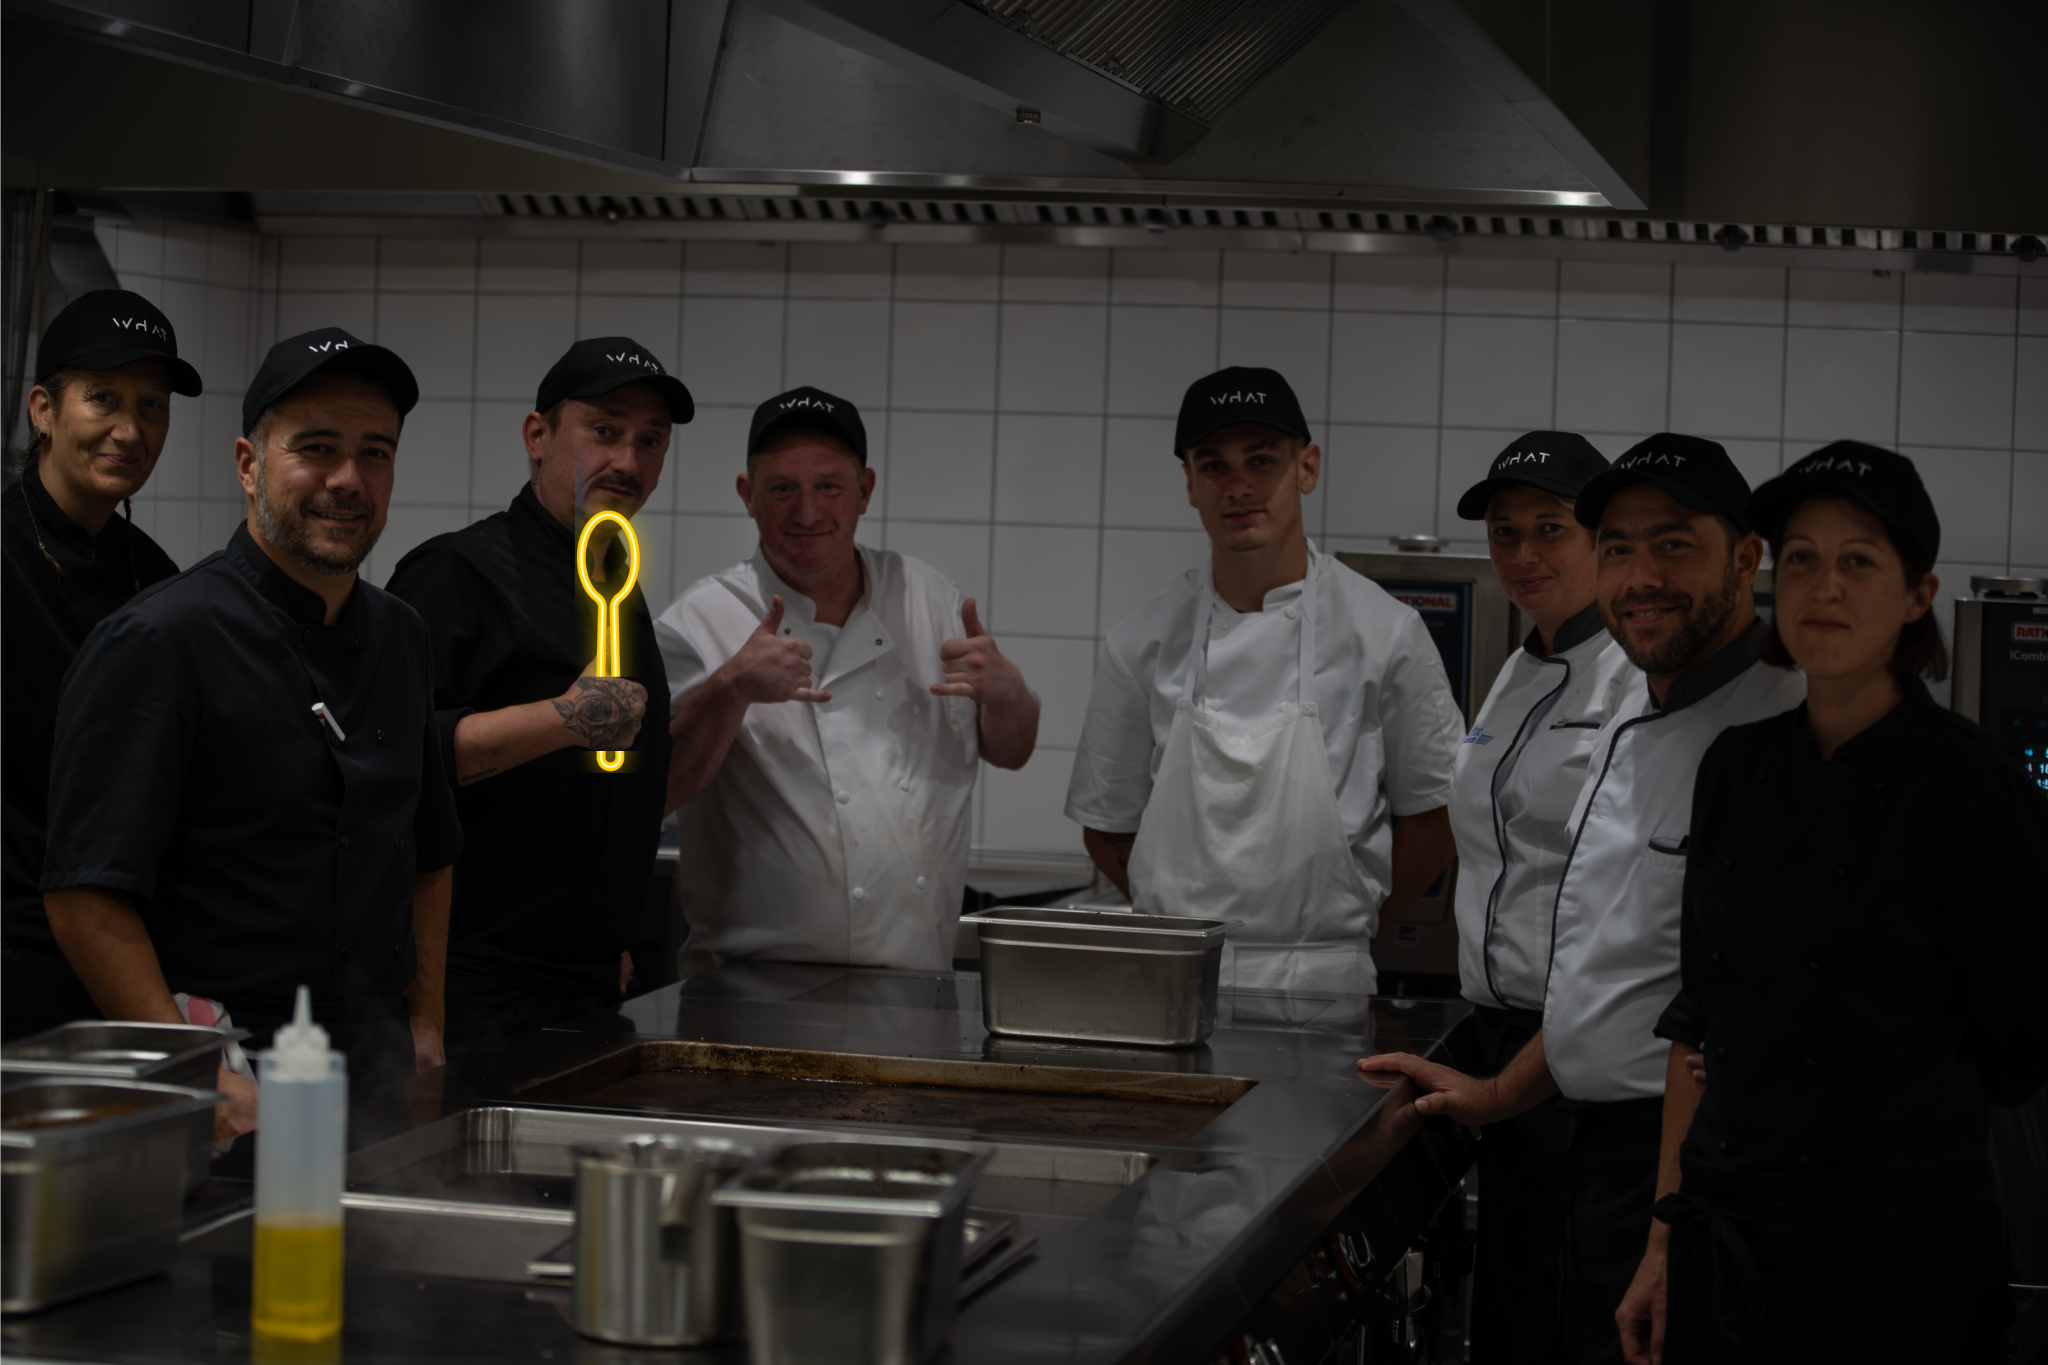 les équipes de la cuisine du WHAT avec le chef Manu. Ils ont leurs tenues de travaillent avec leurs casquettes WHAT et leurs tabliers